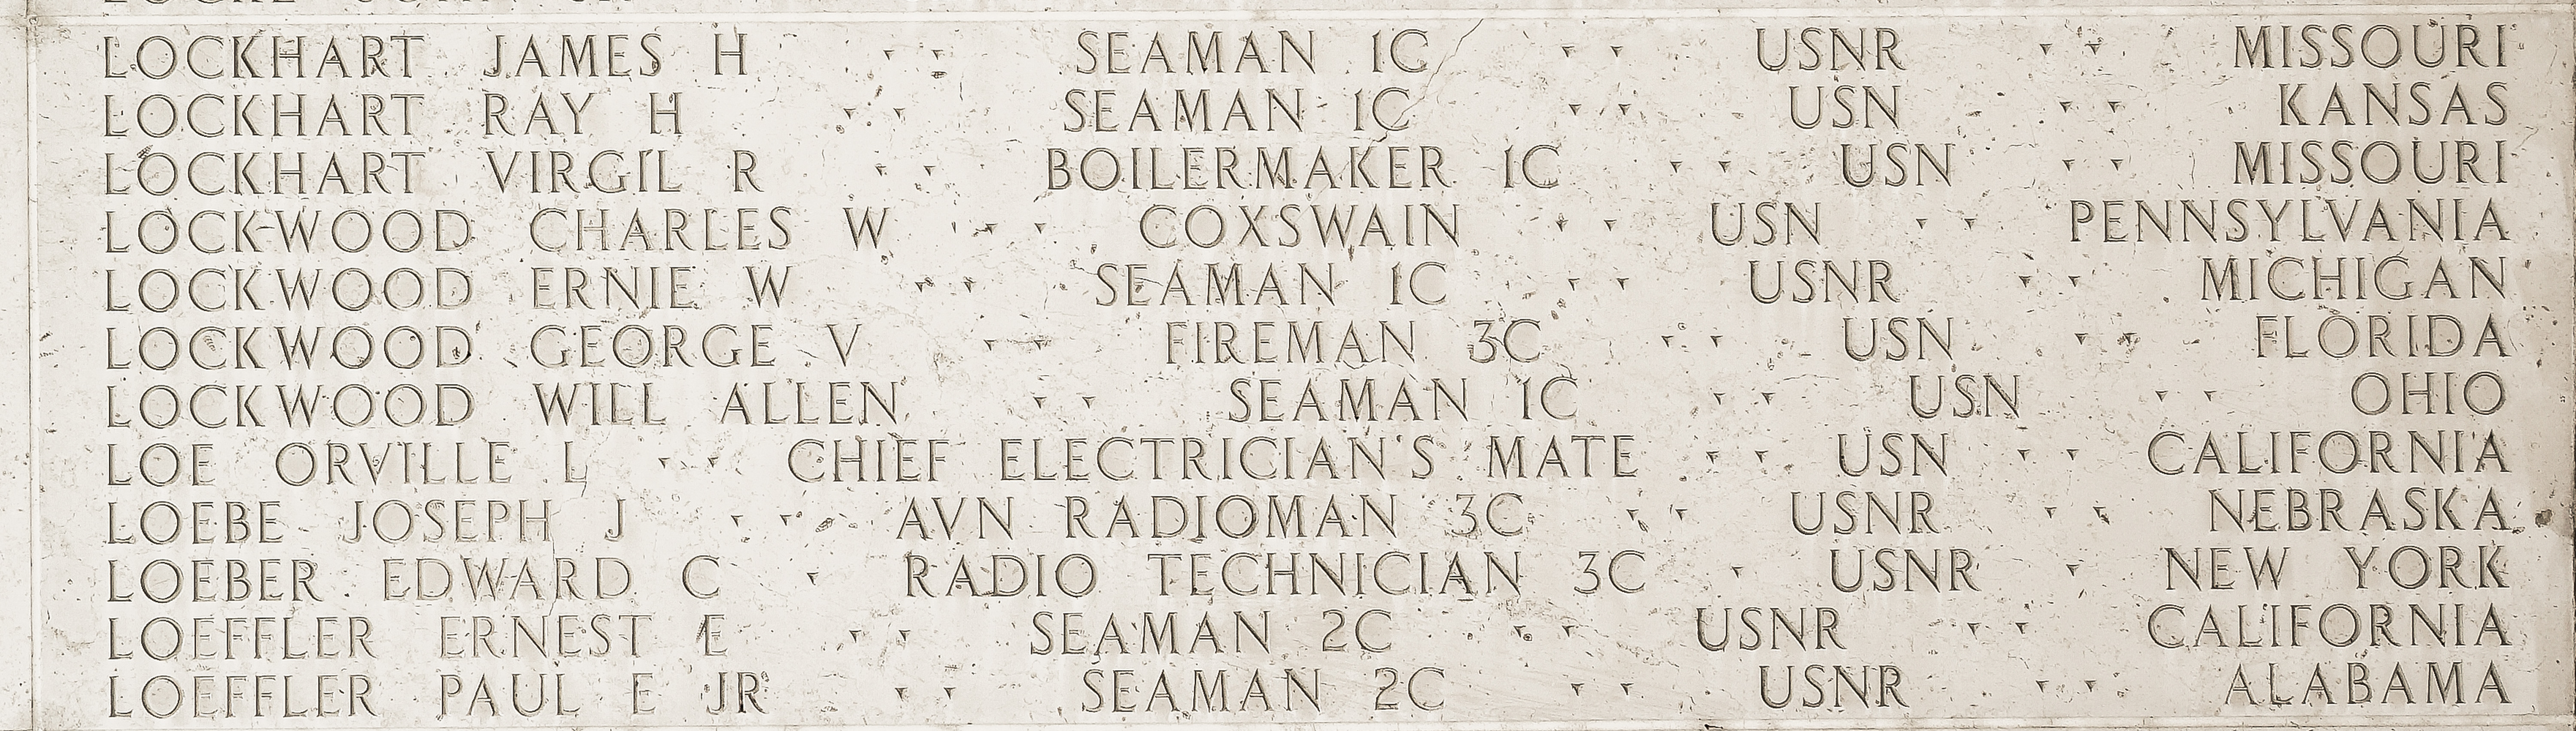 Paul E. Loeffler, Seaman Second Class